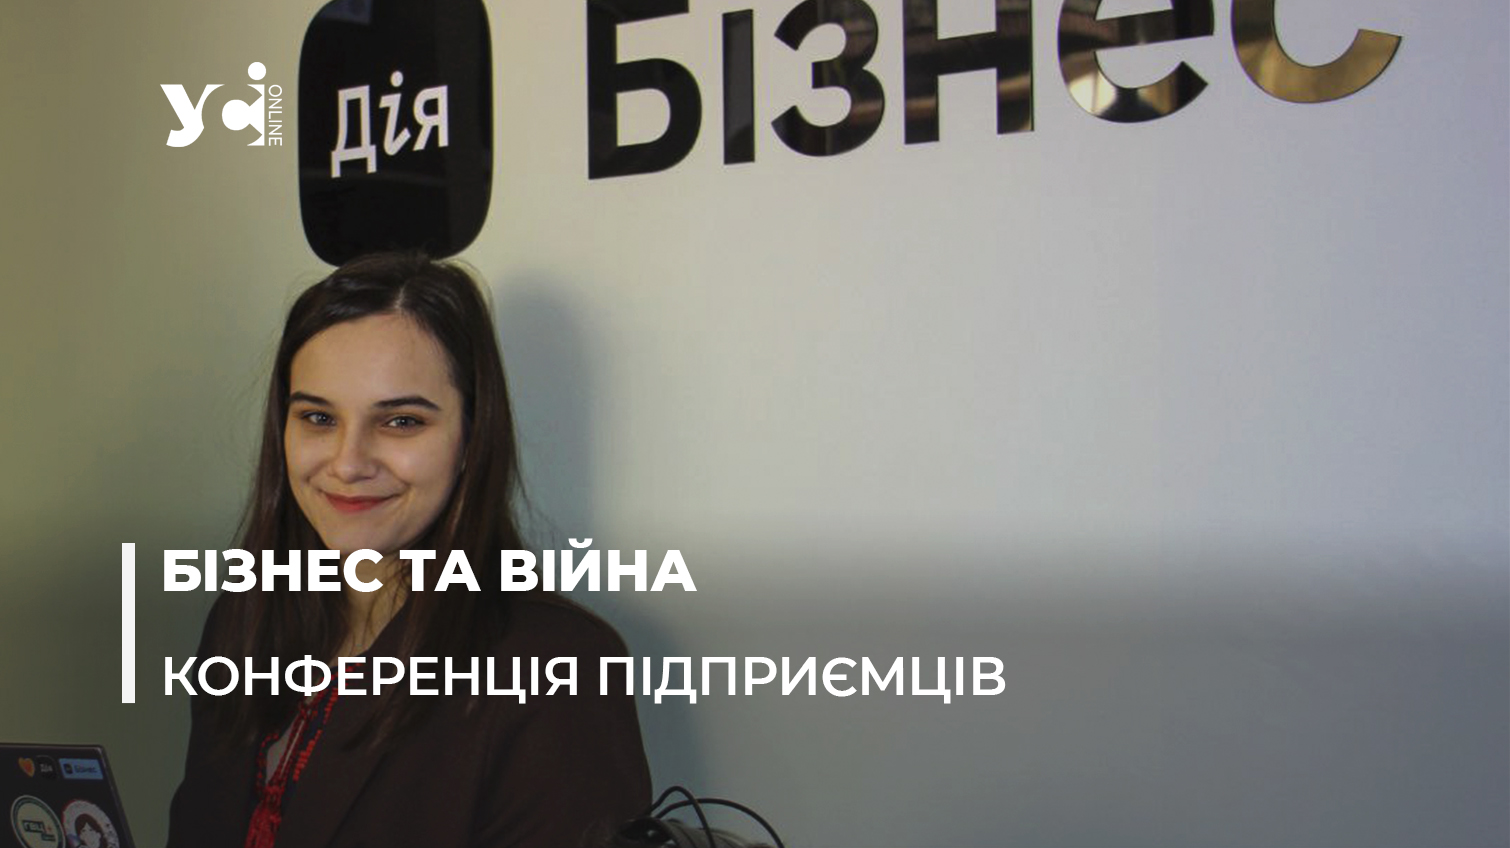 Дія.Бізнес в Одесі поновлює роботу: що корисного для підприємців (фото, відео) «фото»